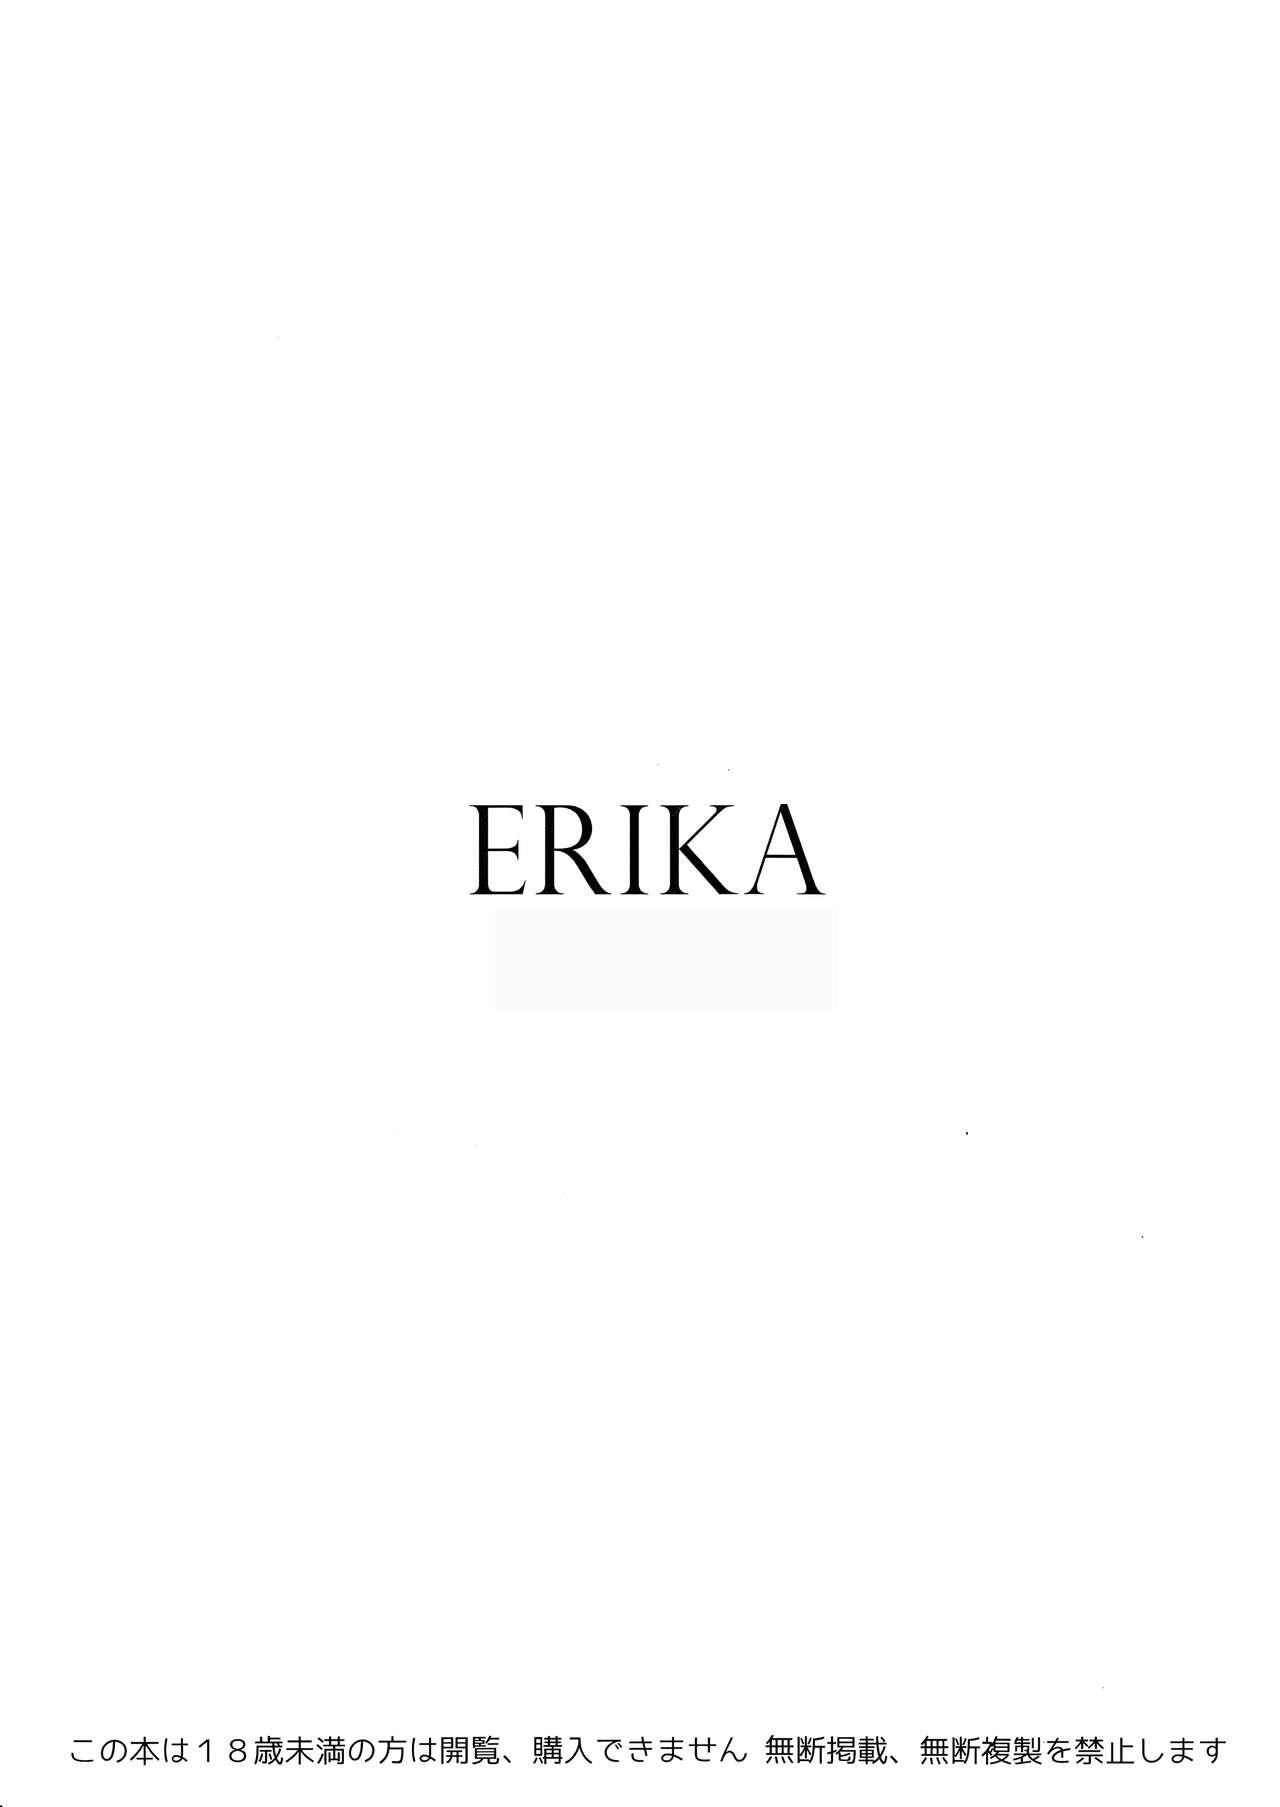 Bear ERIKA Vol. 1-3 - Girls und panzer Style - Page 3